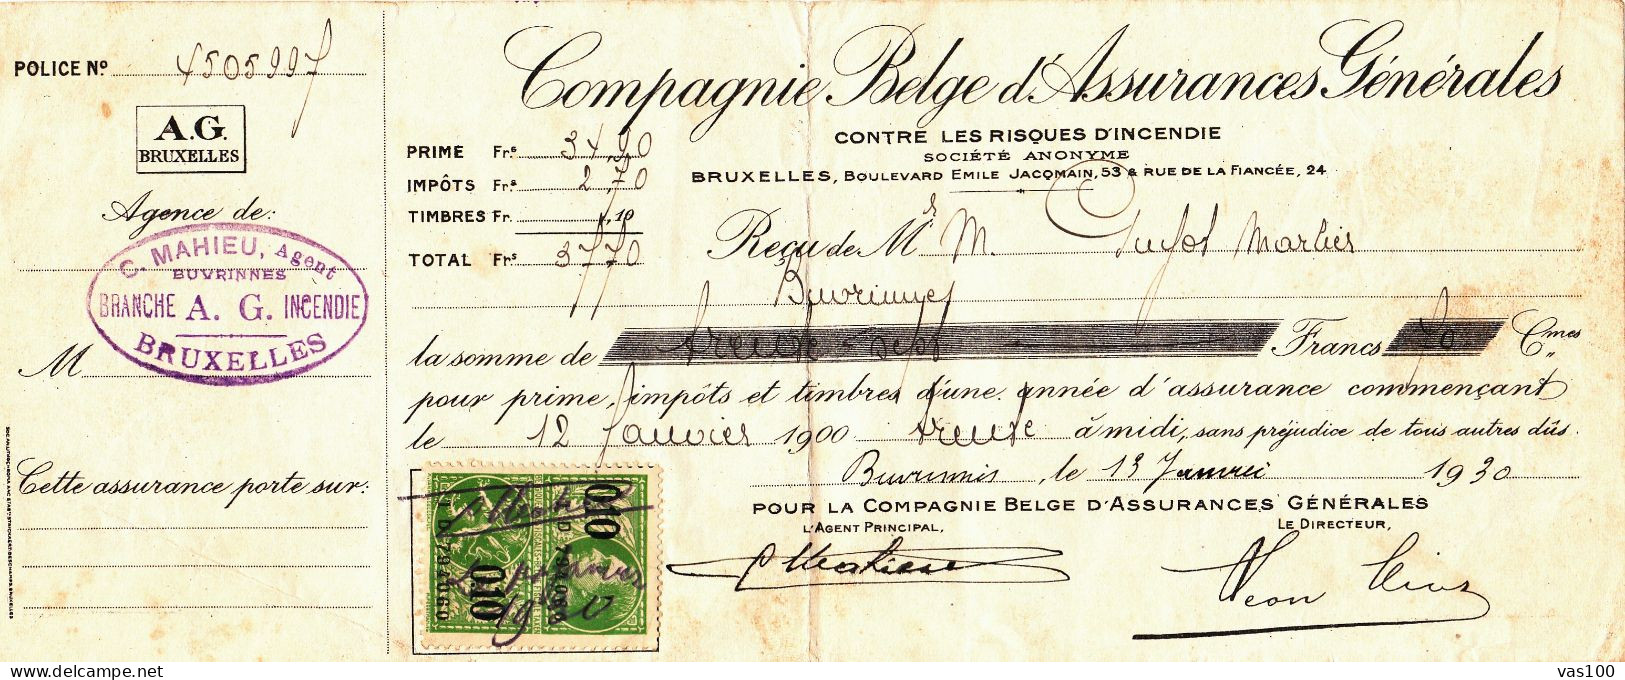 COMPAGNIE BELGE D'ASSURANCES GENERALES CONTRE LES RISQUES D'INCENDIE 1930 BELGIUM - Documenten